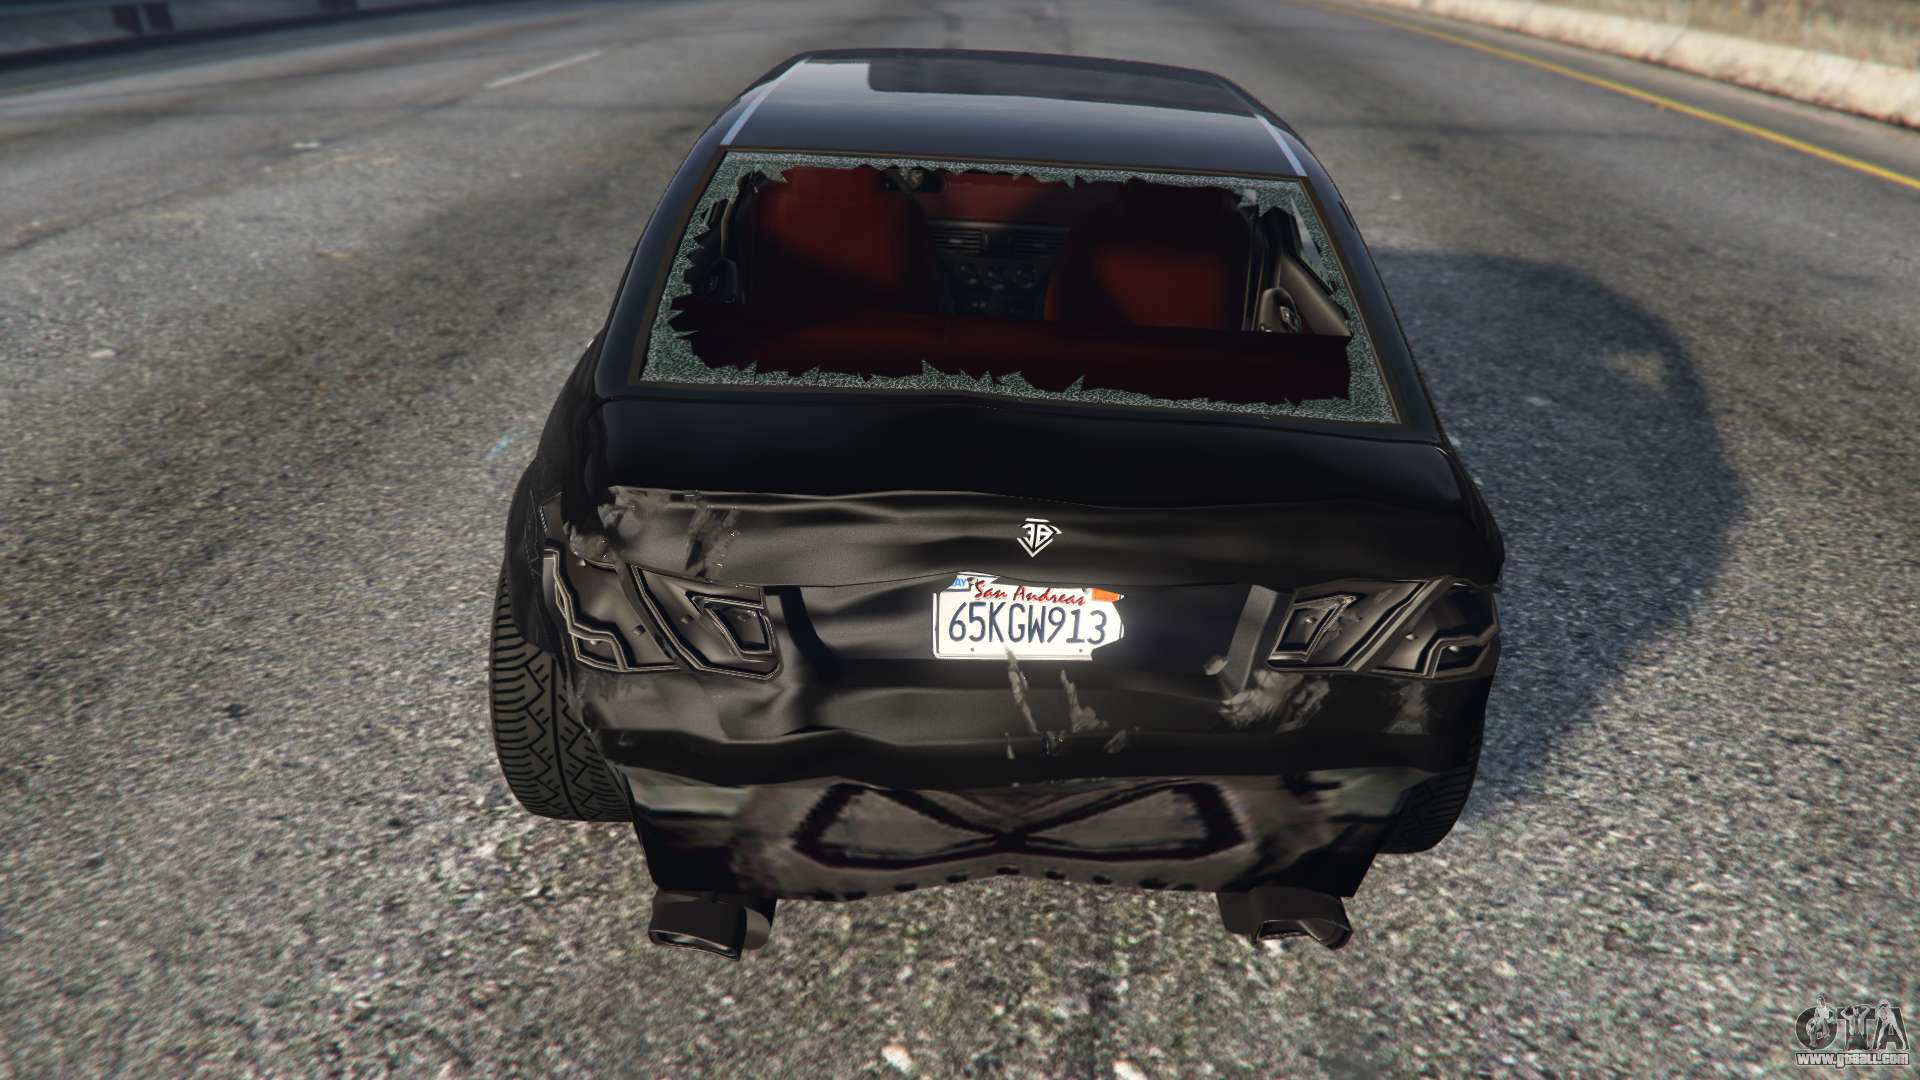 Download Realistic Car Crash Physics mod for GTA San Andreas